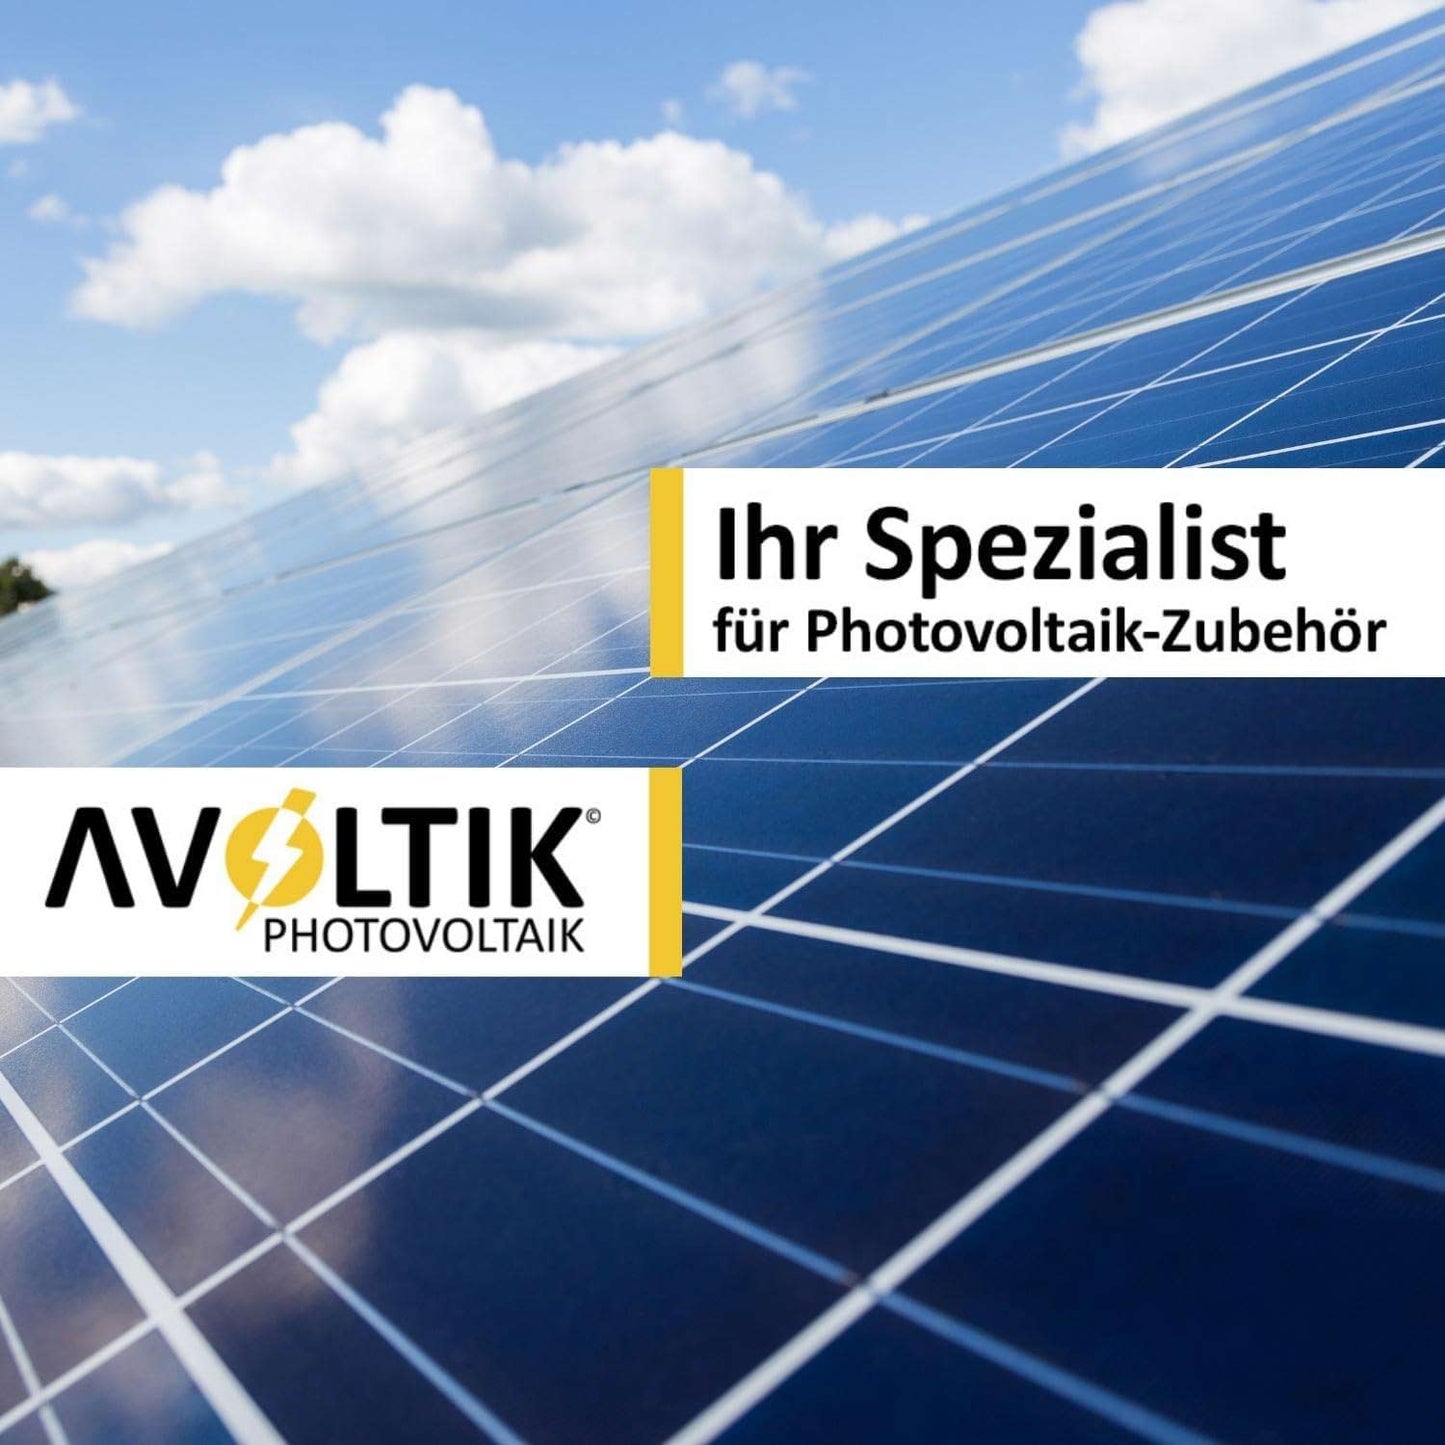 Avoltik Photovoltaik - Ihr Spezialist für Photovoltaik Zubehör